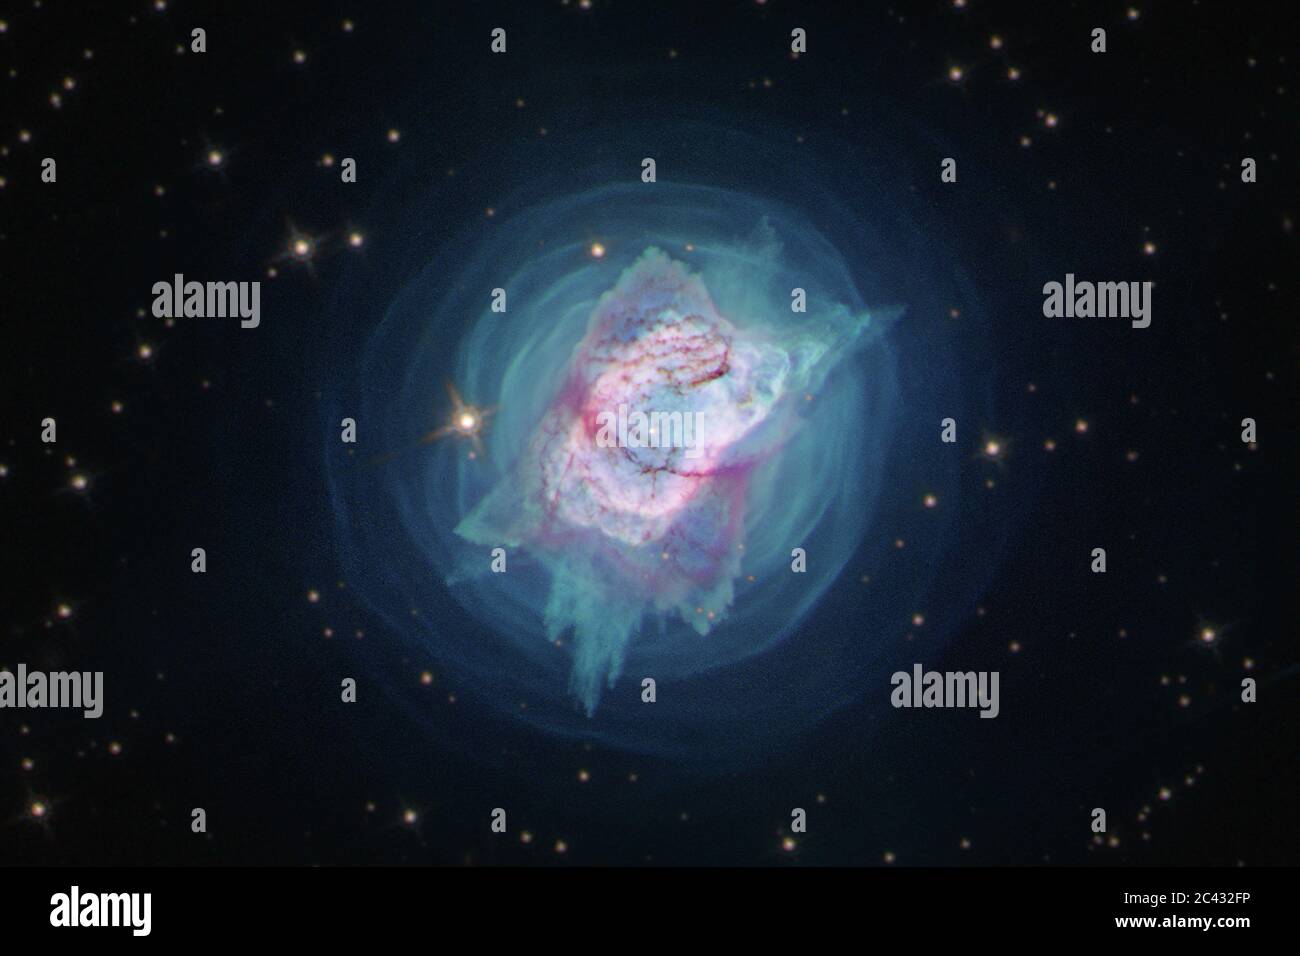 23 giugno 2020. Come motori di fusione nucleare, la maggior parte delle stelle vive in condizioni di quiete per centinaia di milioni e miliardi di anni. Ma vicino alla fine della loro vita, possono trasformarsi in capricci pazzi, che soffia fuori le conchiglie e i getti di gas caldo. In questa immagine, NGC 7027 assomiglia a un baco gioiello, un insetto con una calotta metallica brillantemente colorata. Recentemente, la stella centrale del NGC 7027 è stata identificata in una nuova lunghezza d'onda di luce - quasi ultravioletta - per la prima volta utilizzando le capacità uniche di Hubble. Credit: UPI/Alamy Live News Foto Stock